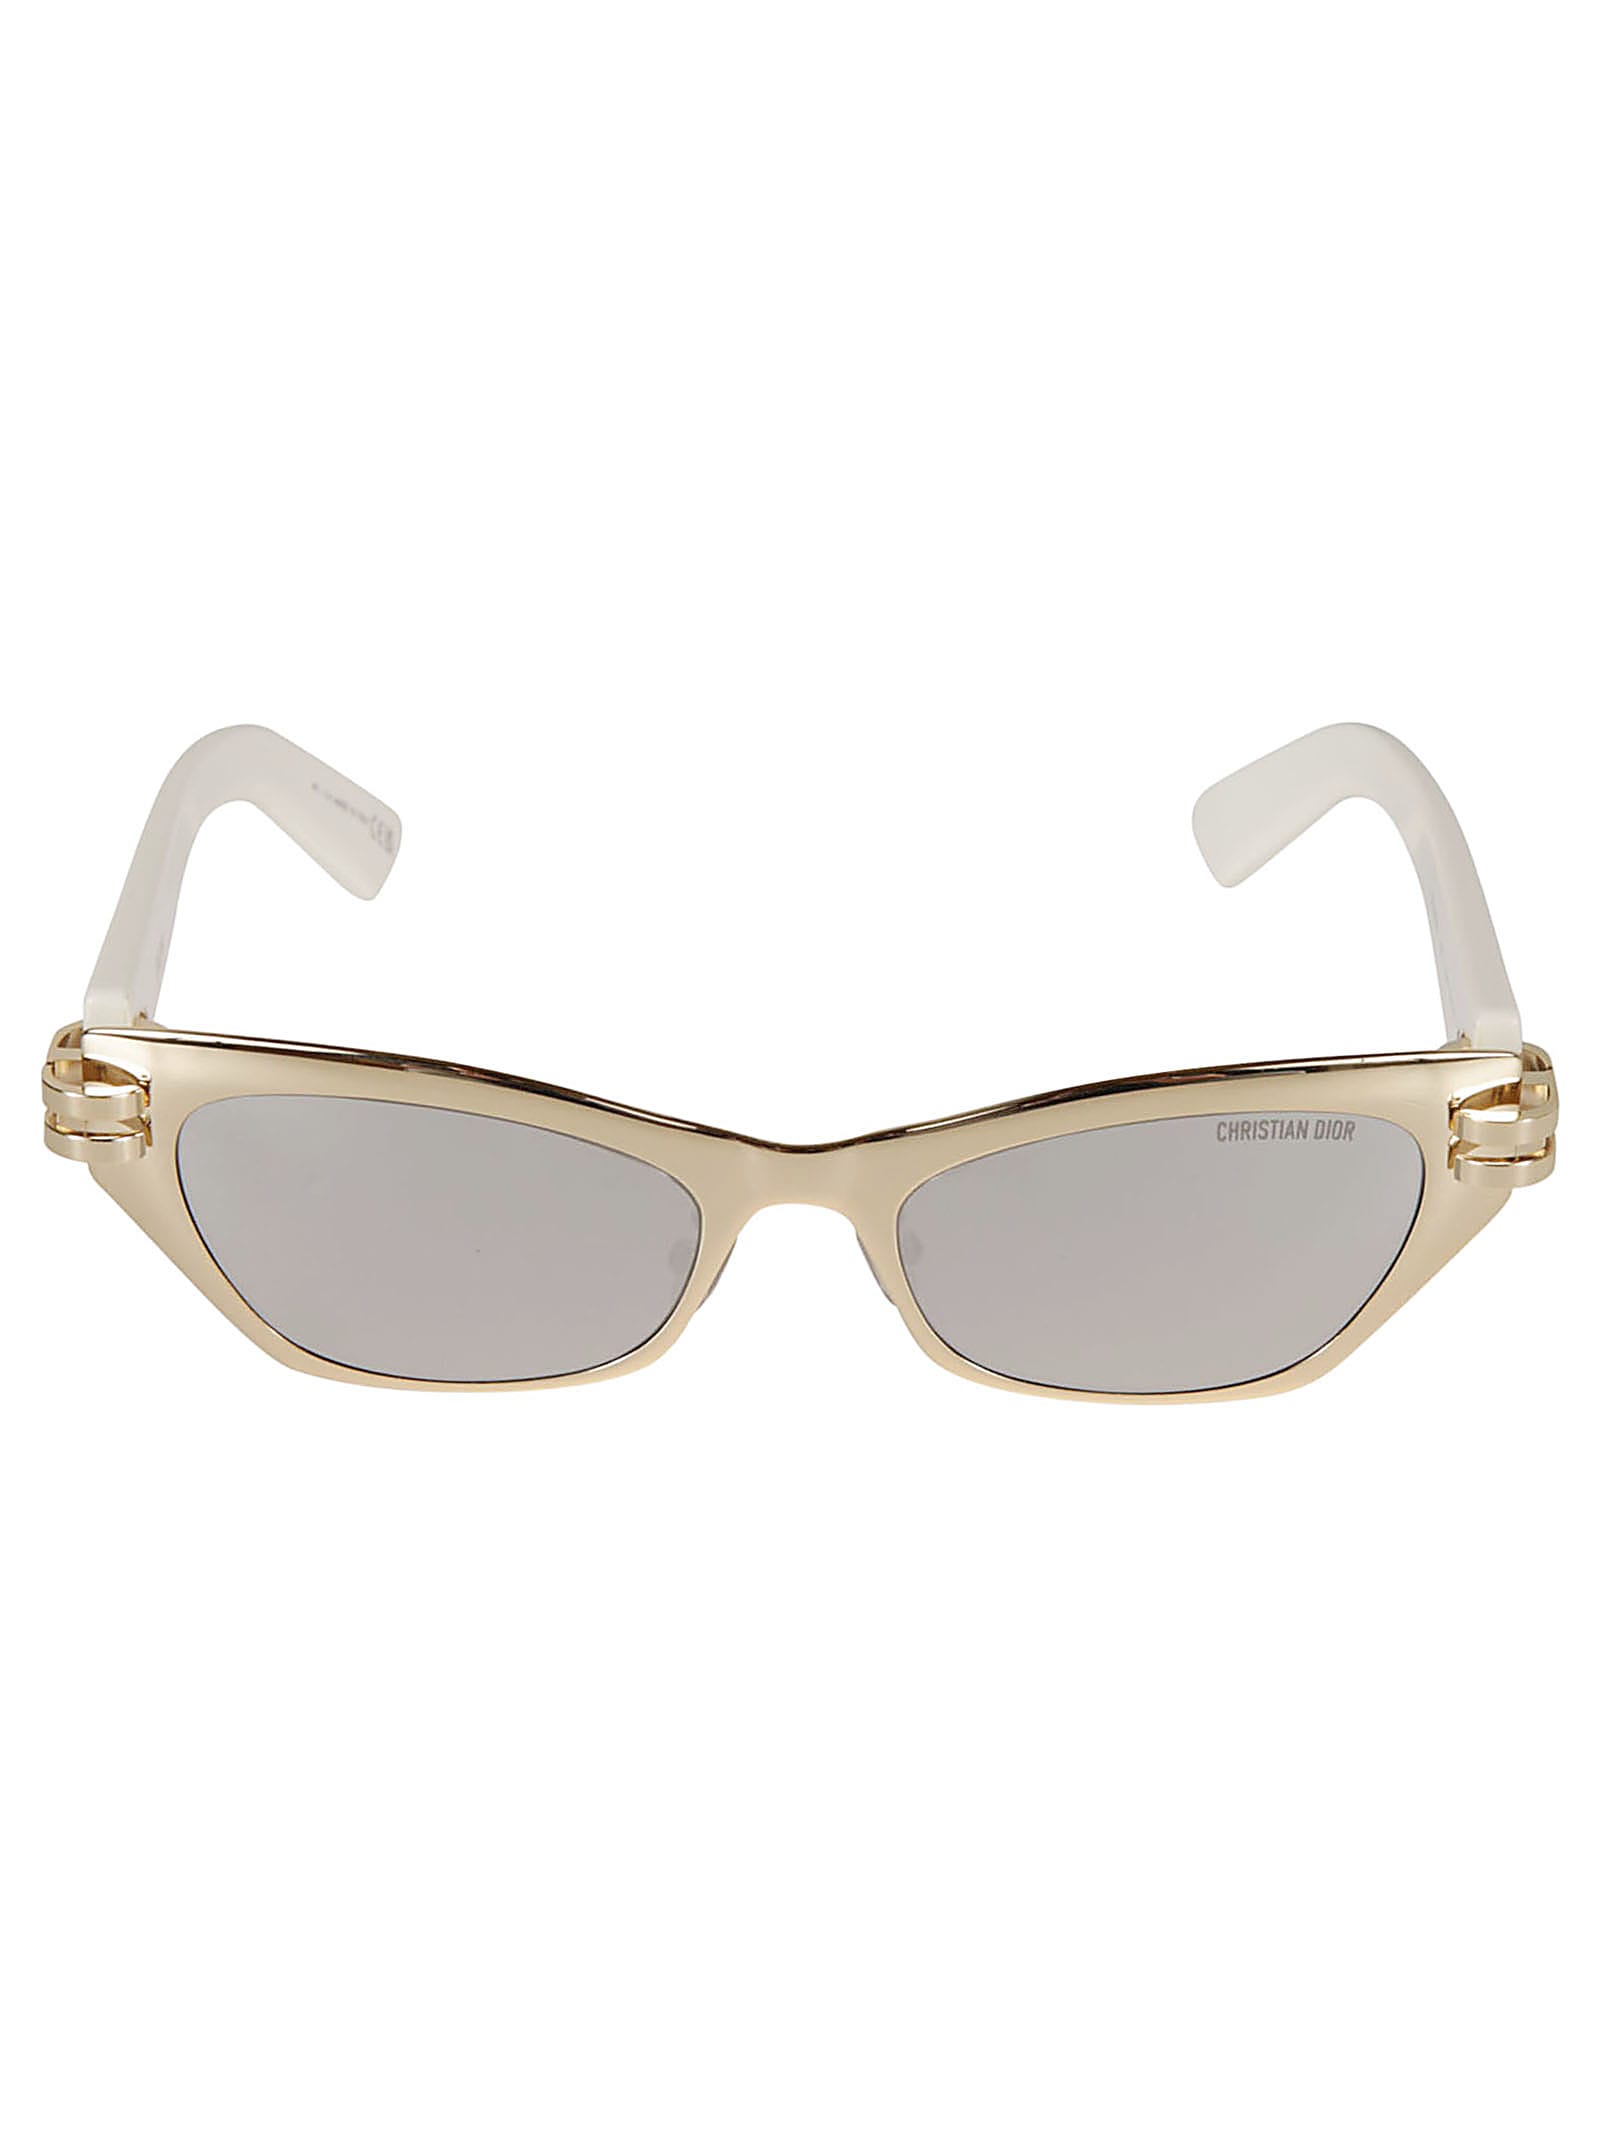 Dior B3u Sunglasses In F0a4